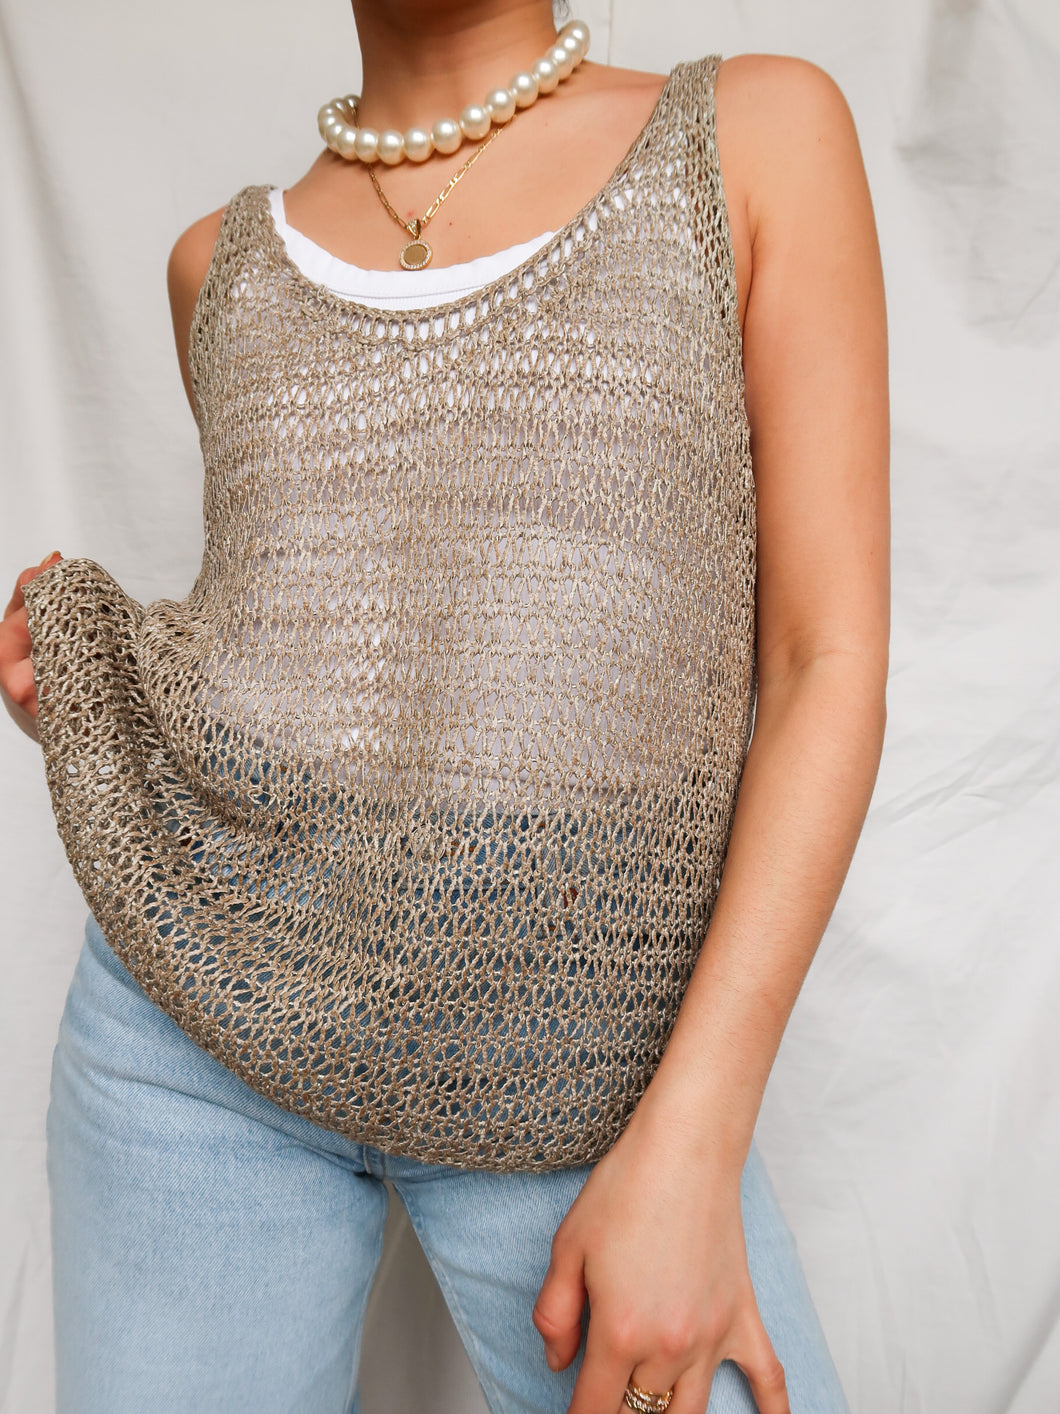 « Portofino » crochet knit